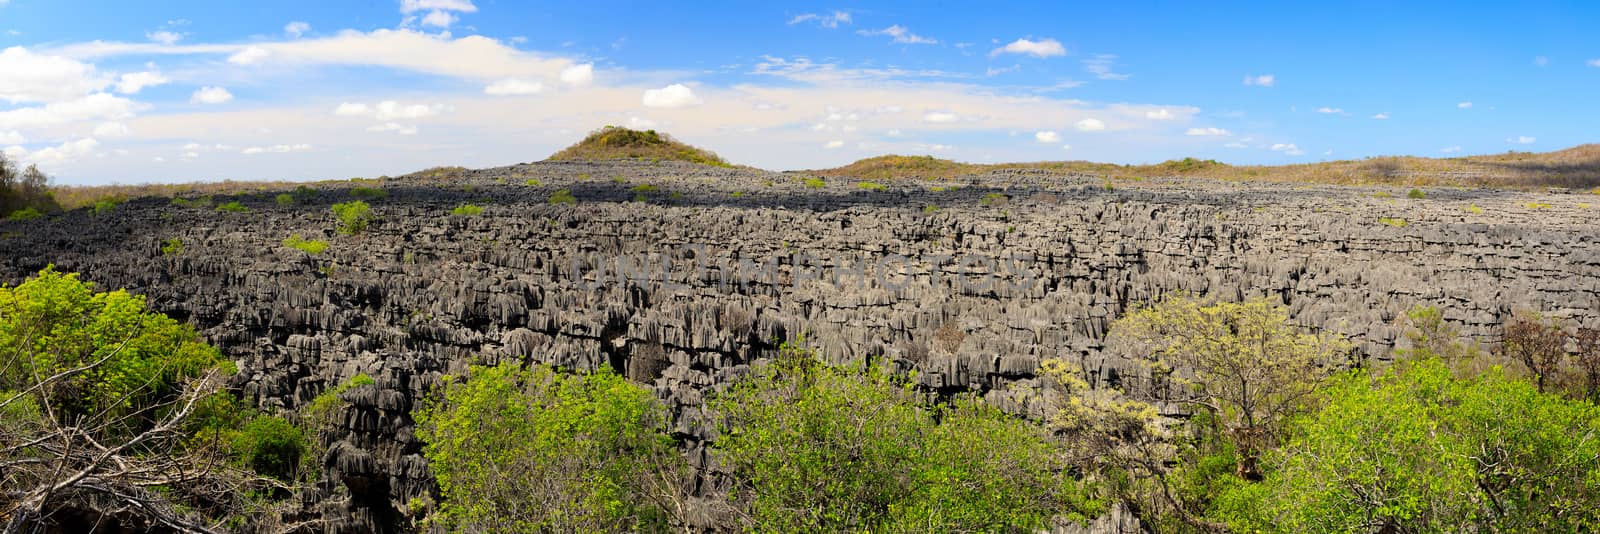 Tsingy rock formations in Ankarana, Madagascar by artush